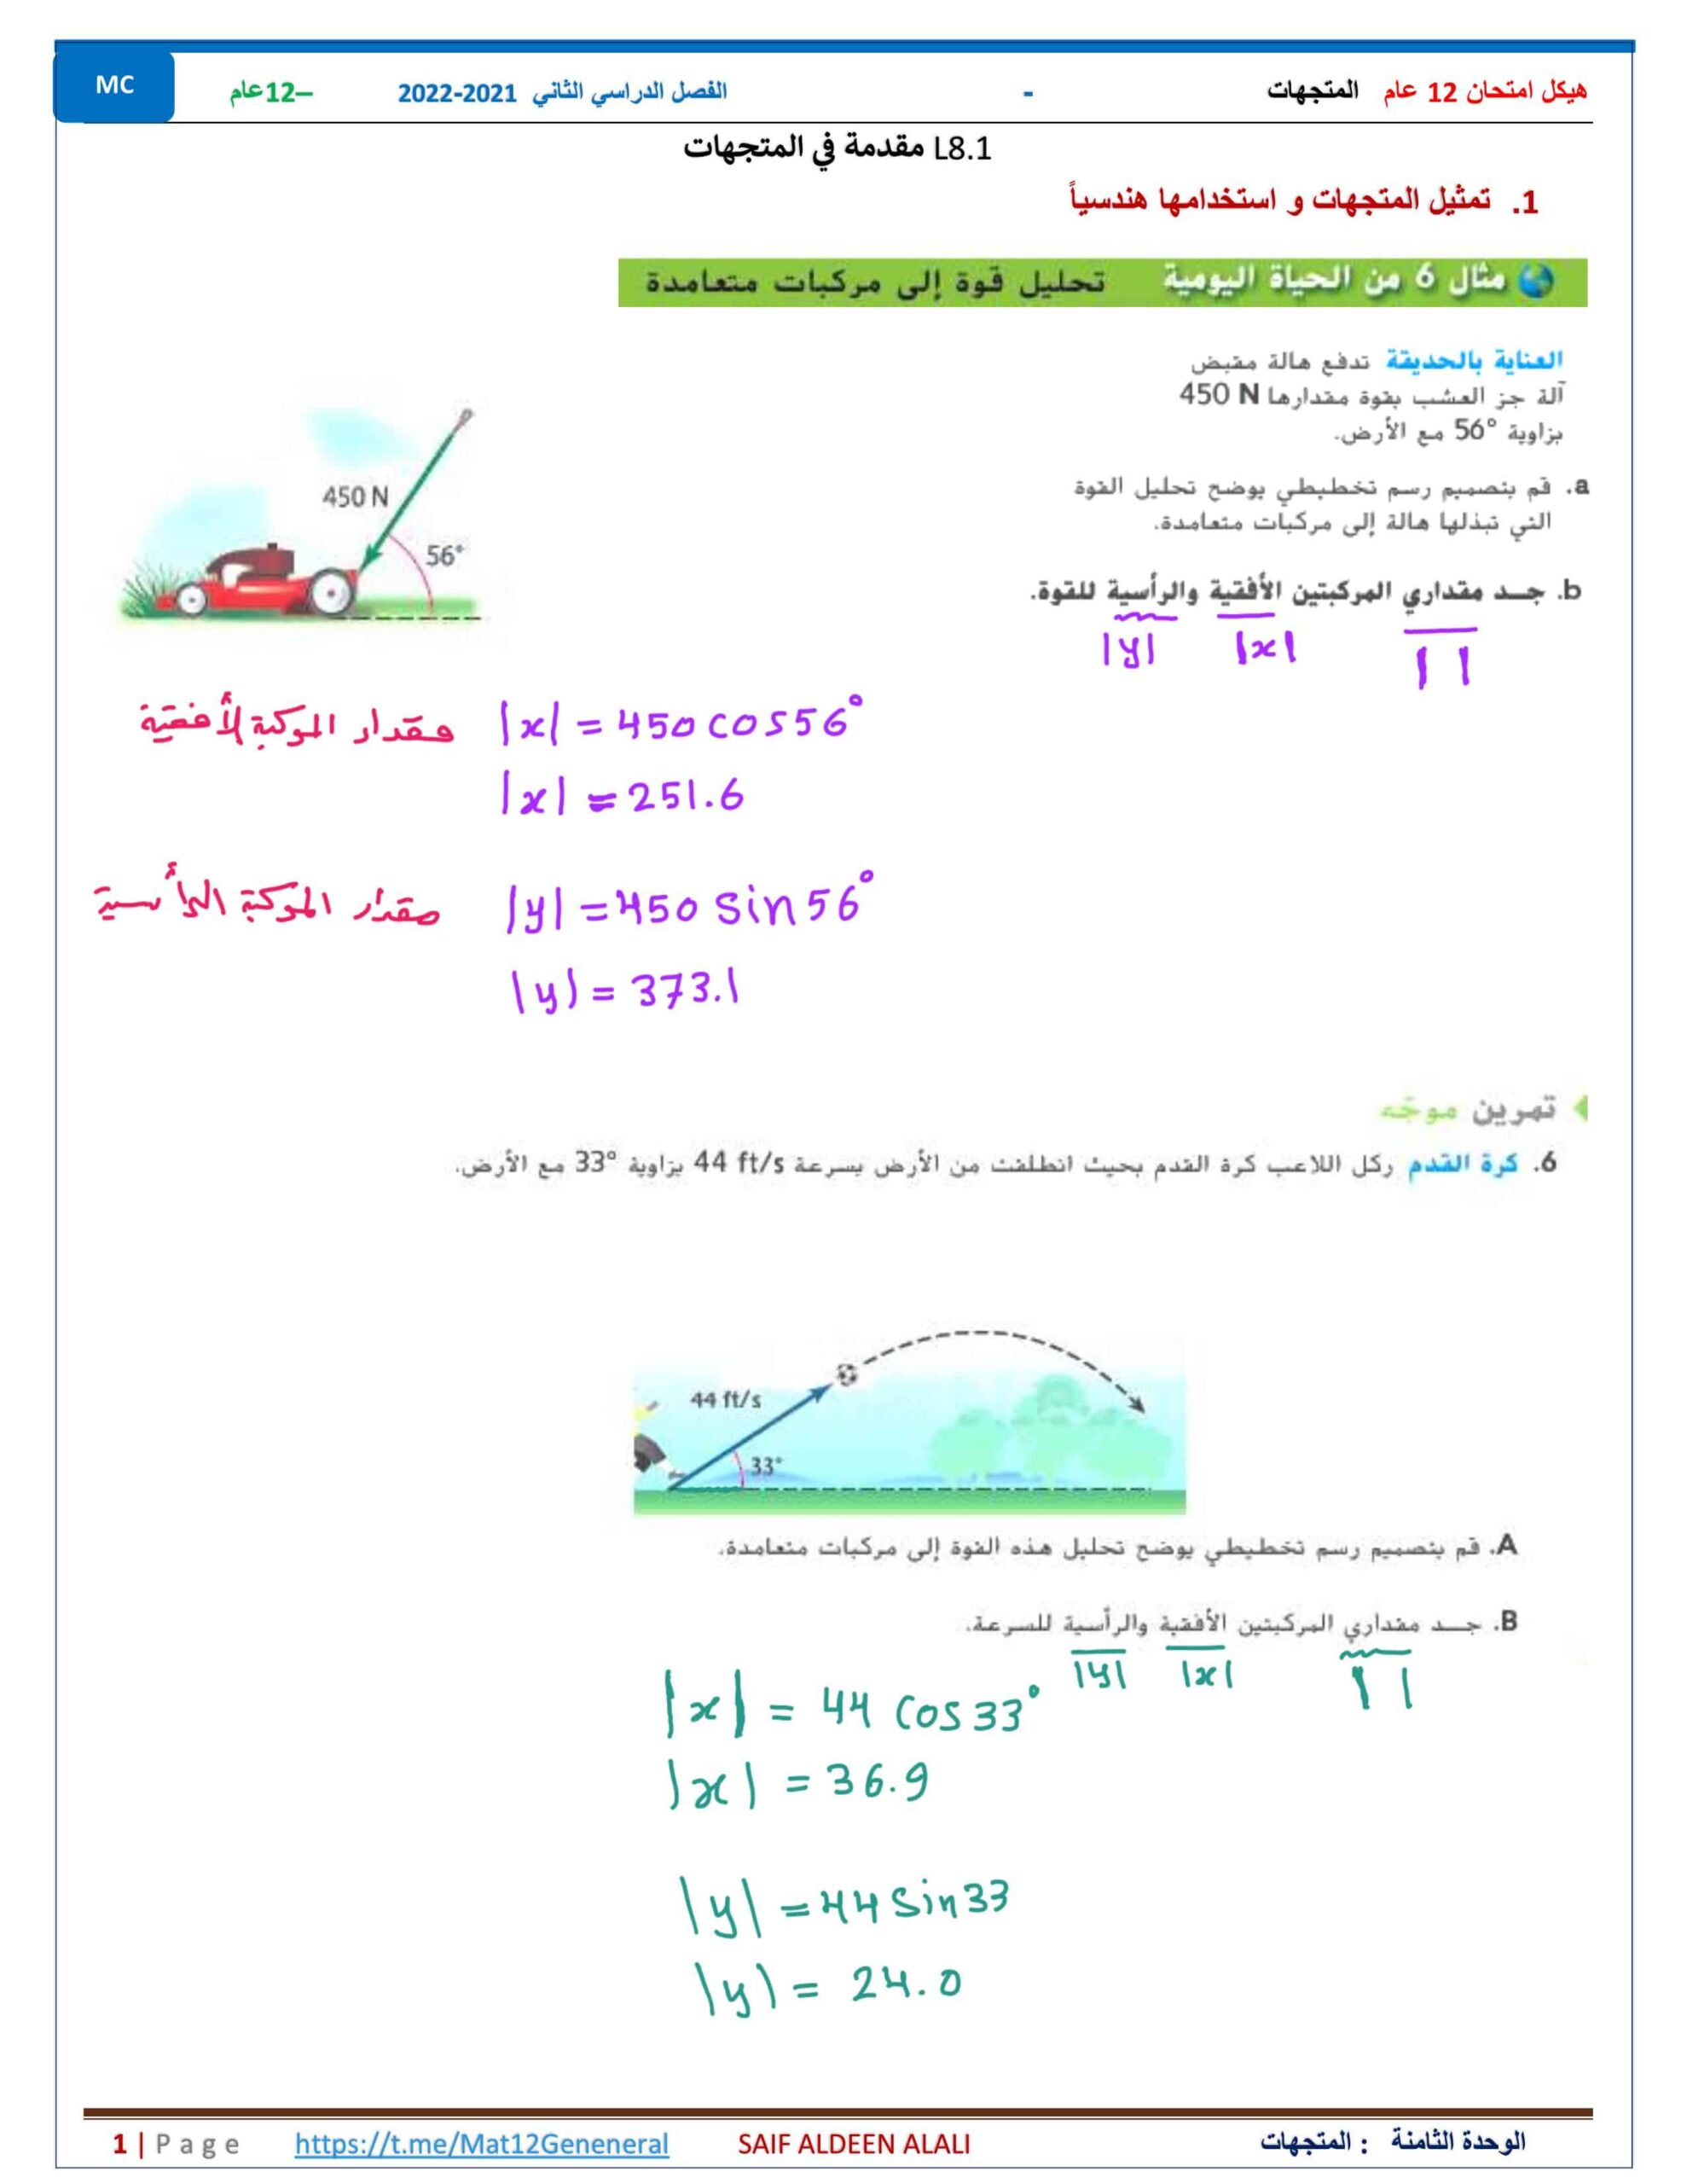 حل هيكل امتحان المتجهات الرياضيات المتكاملة الصف الثاني عشر عام